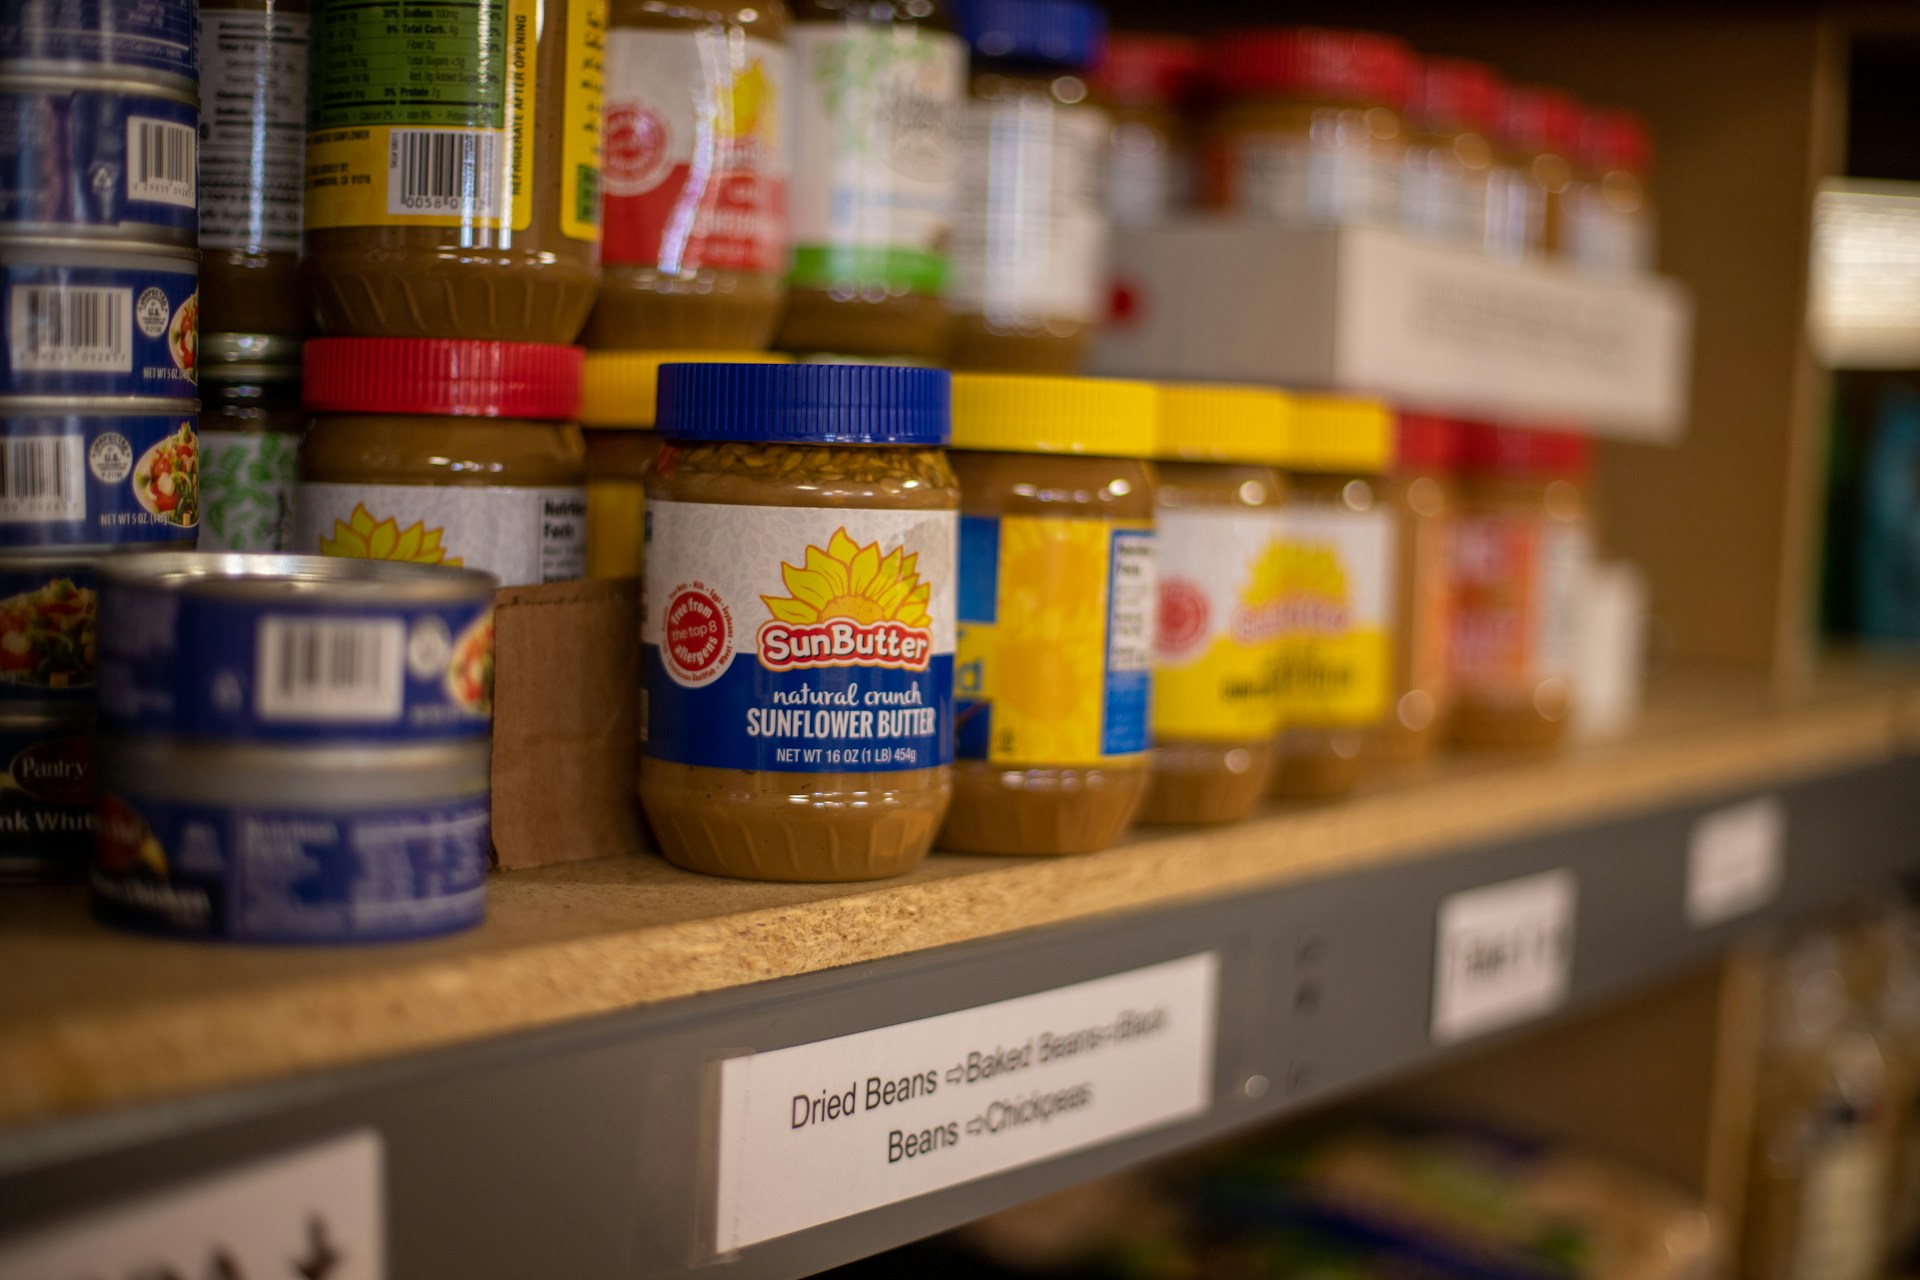 Food banks shelves of peanut butter